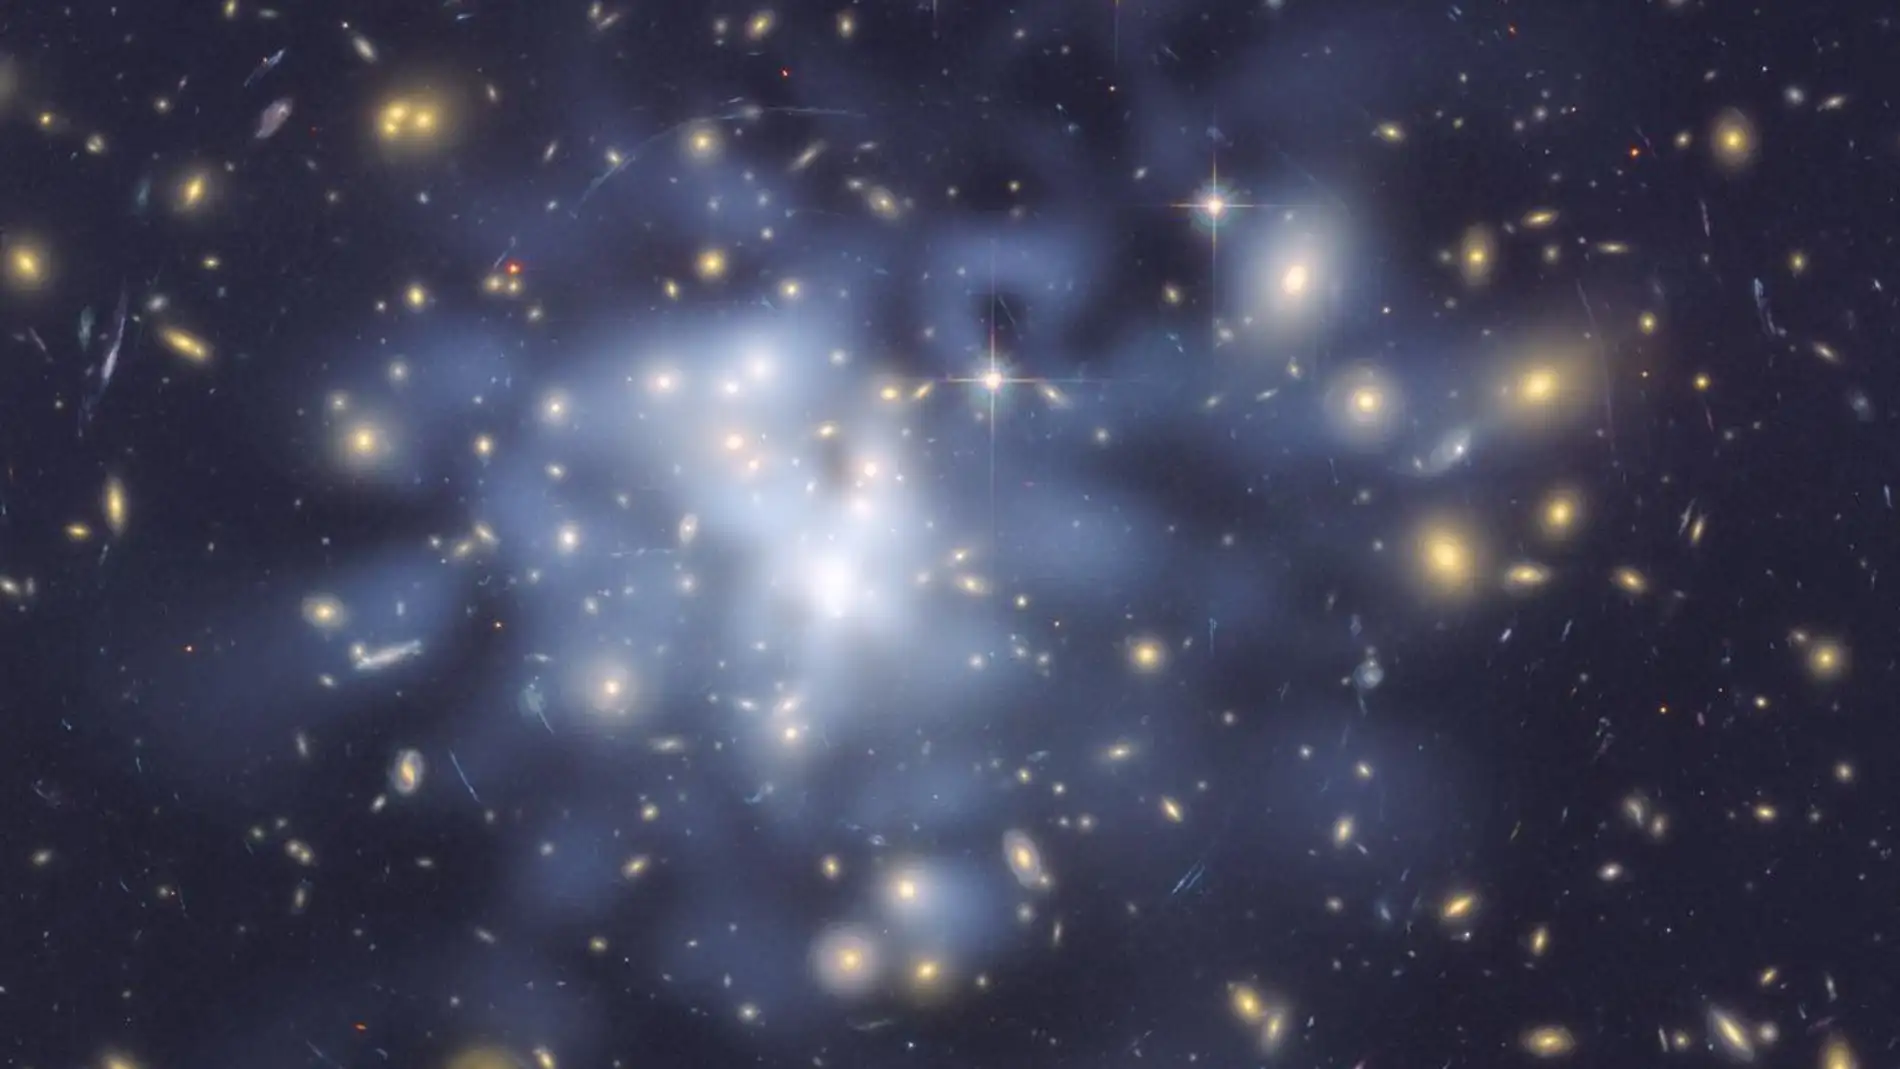 La materia oscura constituye uno de los mayores misterios del universo 